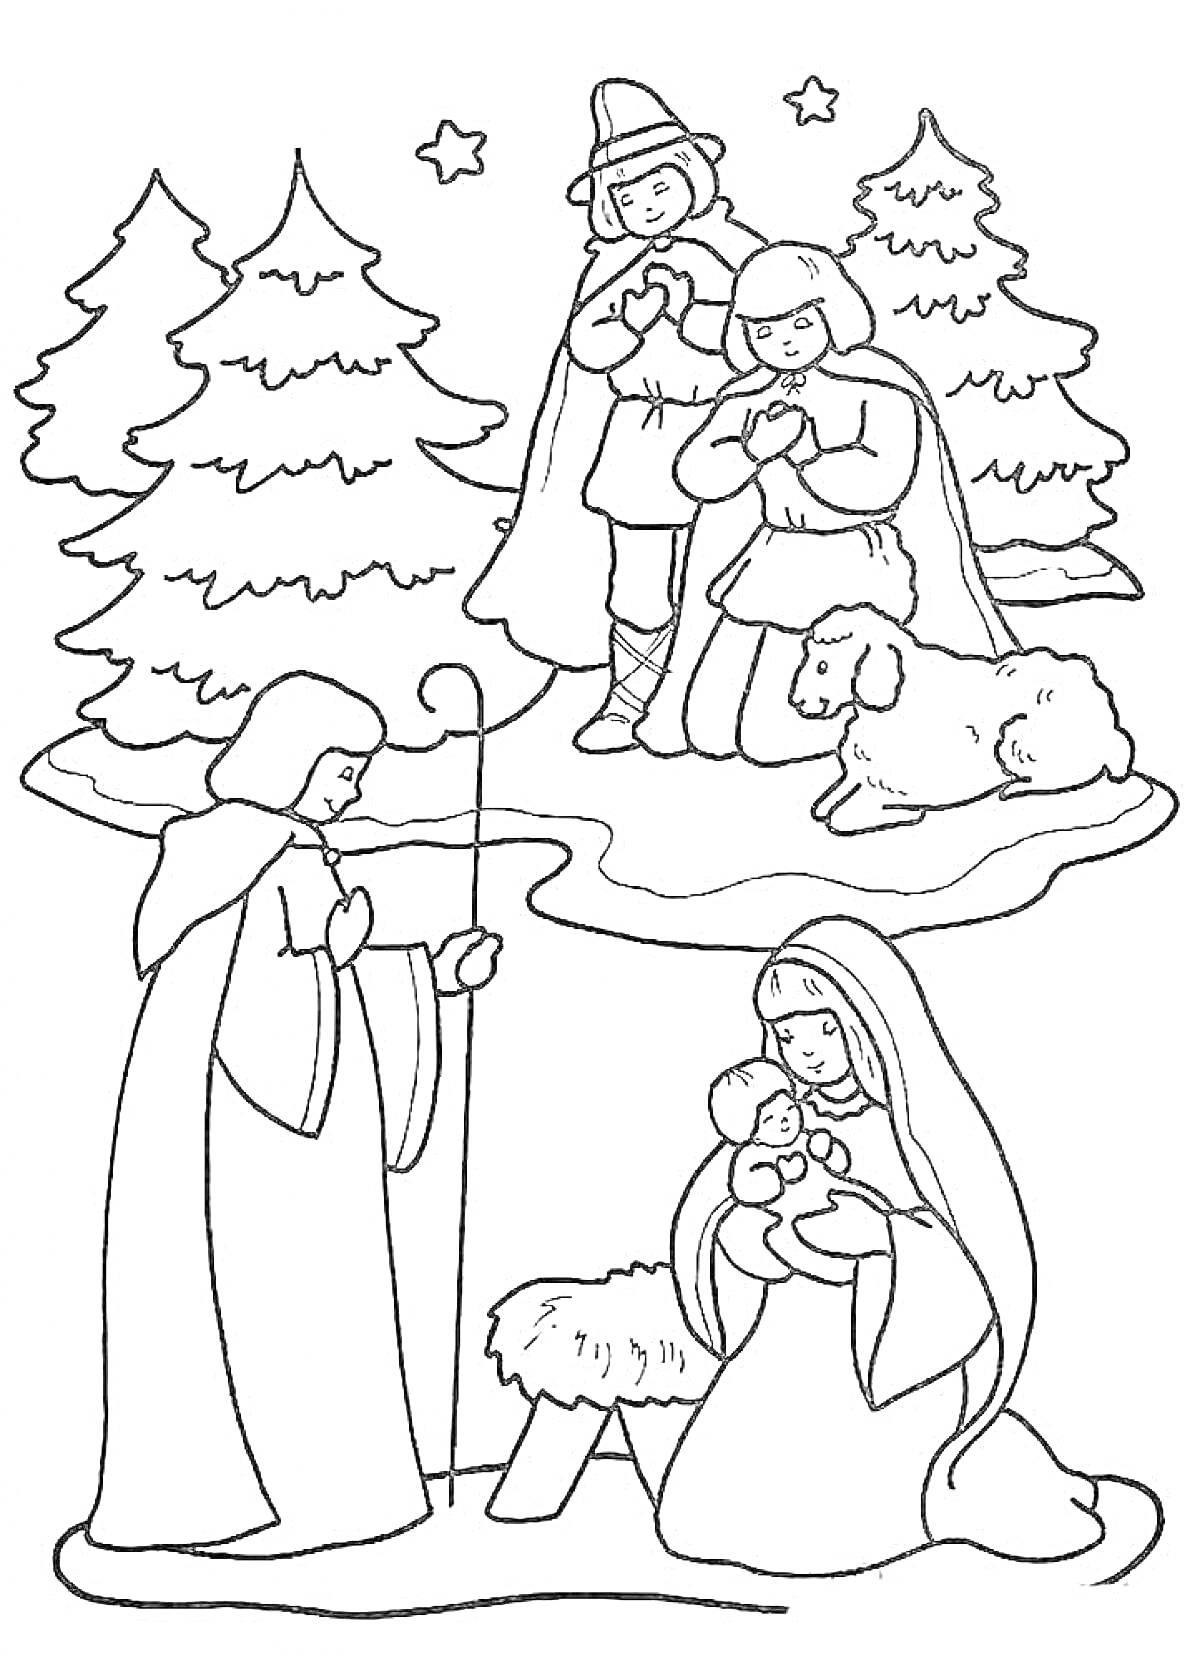 Раскраска Рождественская сцена: пастухи, Мария с младенцем Иисусом у яслей, ангелы, овечка и елки со звездами на заднем фоне